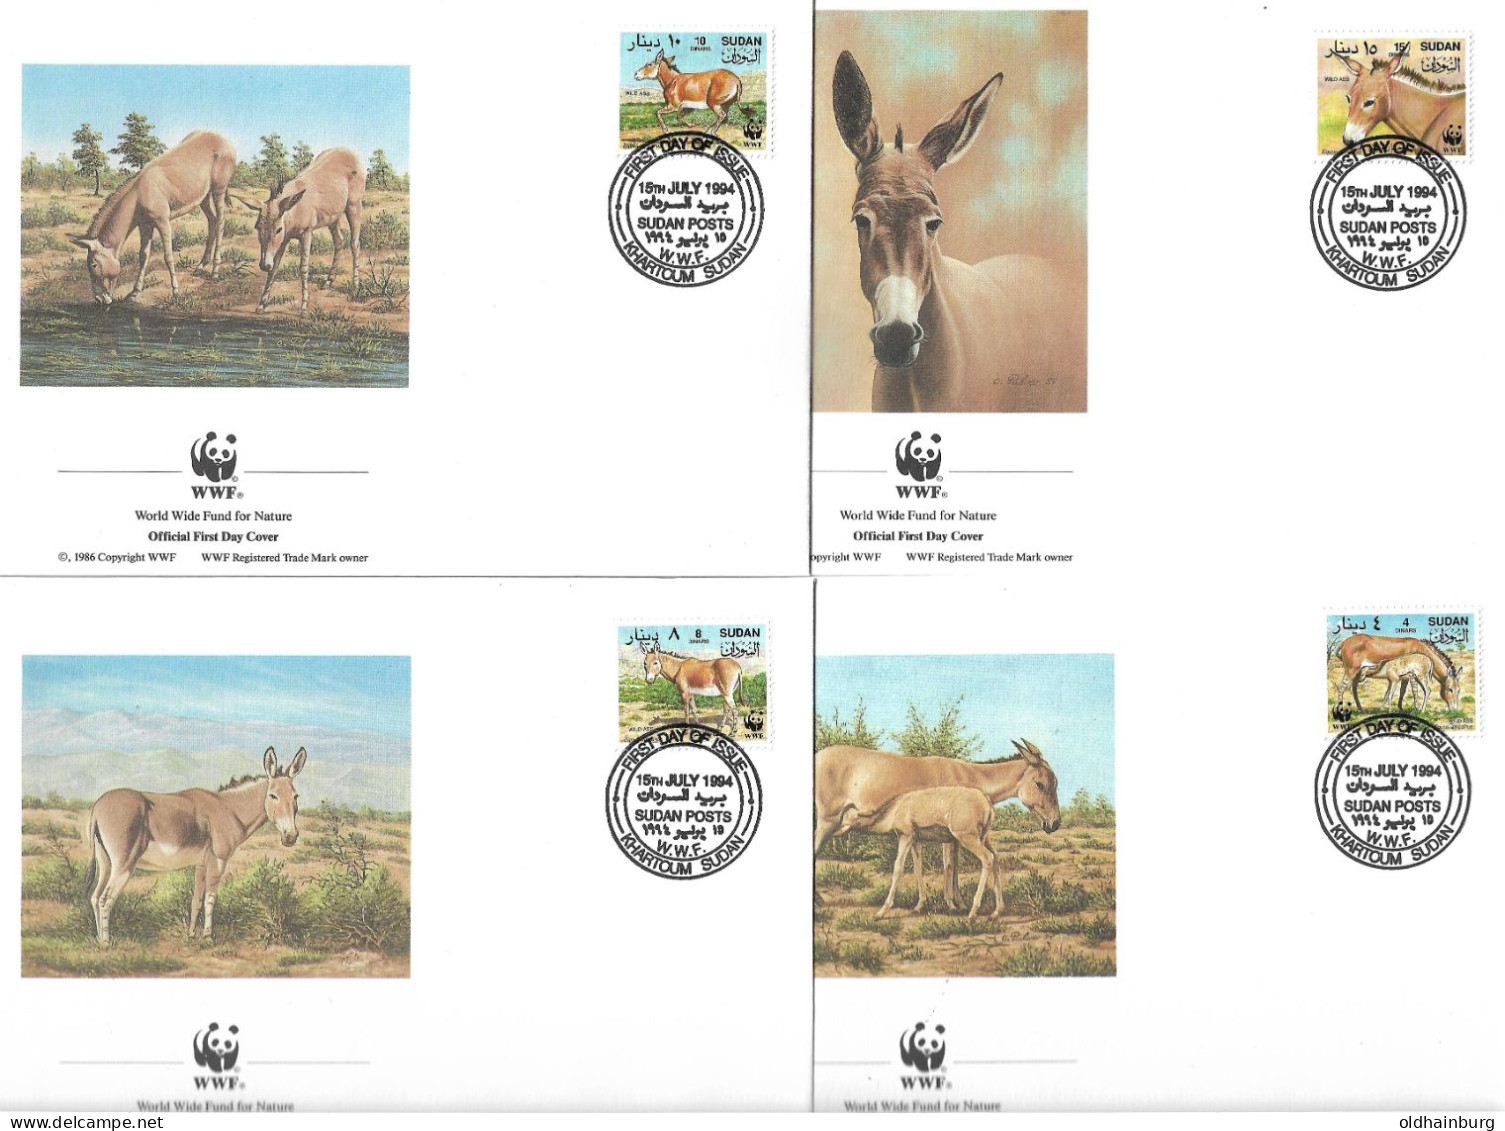 1139b: Sudan 1994, WWF- Ausgabe Afrikanischer Wildesel, Serie **/ FDC/ Maximumkarten, Jeweils In Schutzhüllen - Donkeys